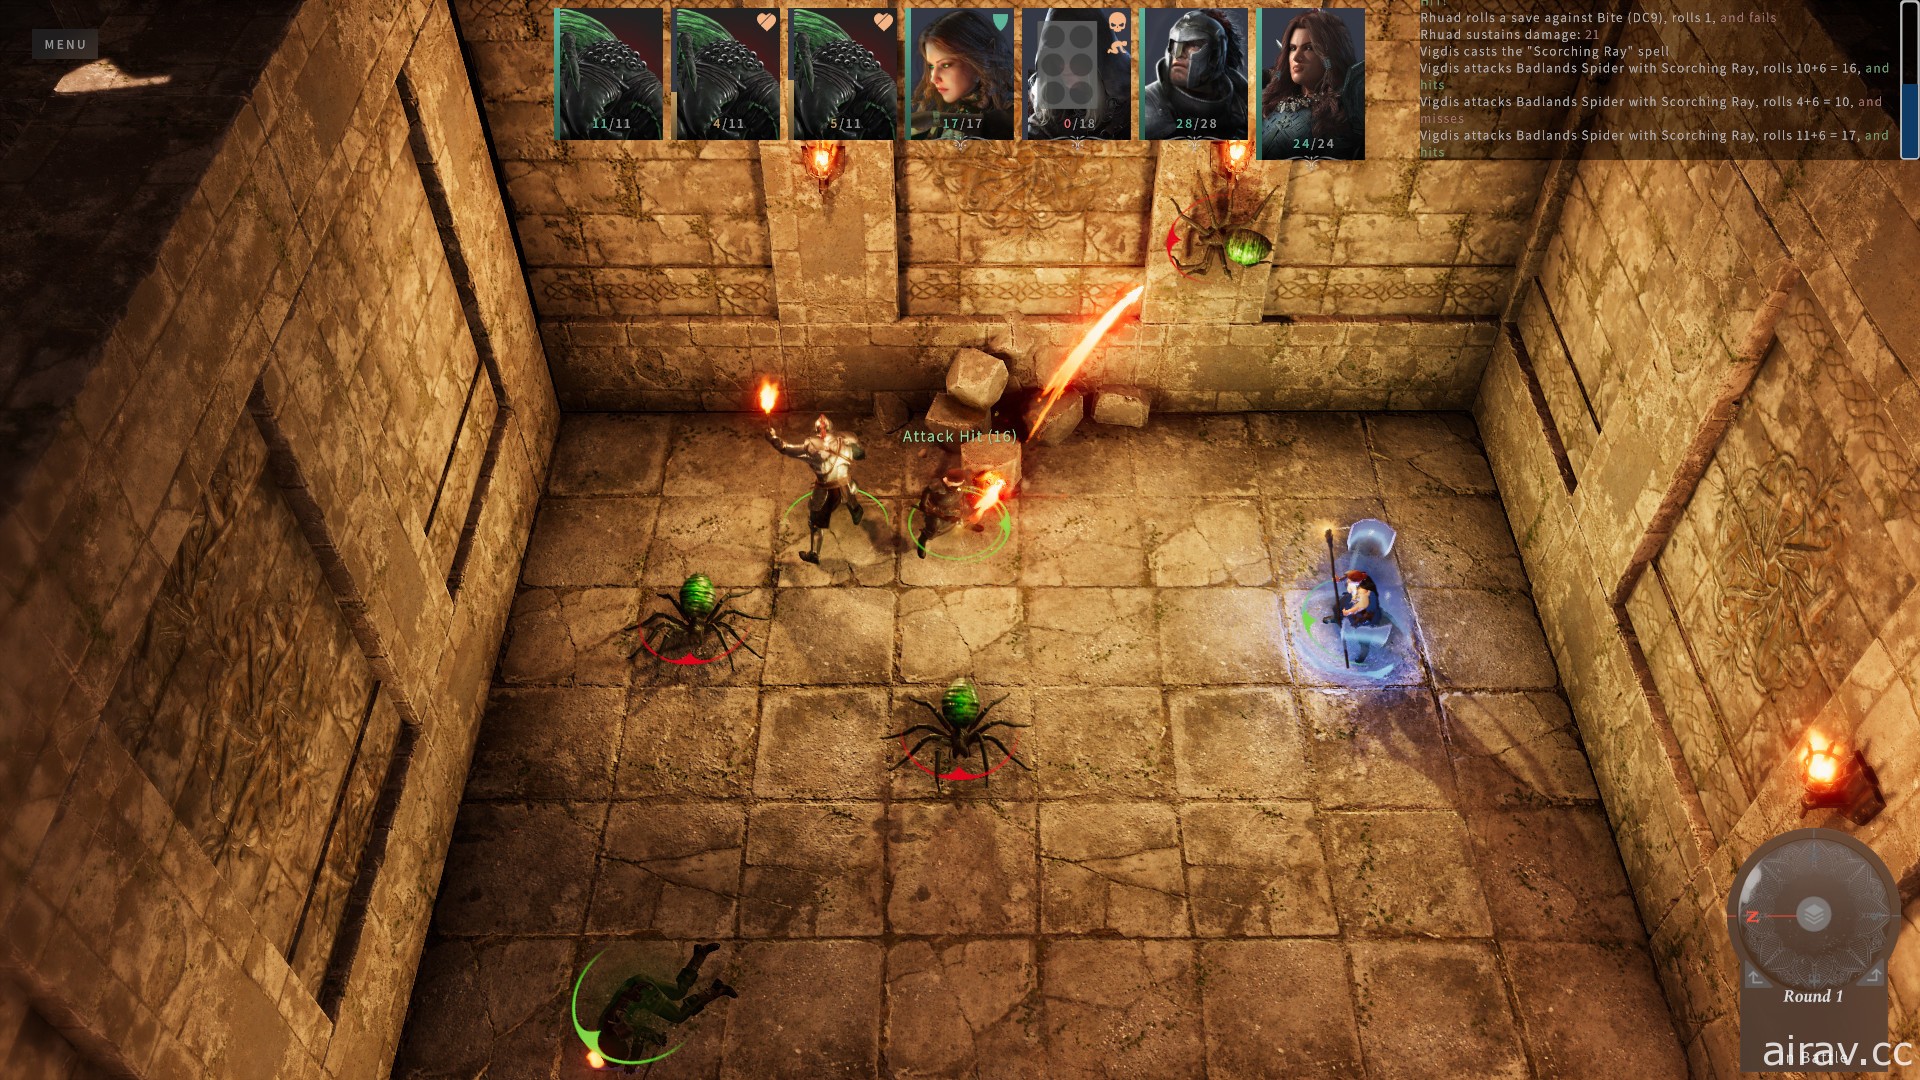 採用龍與地下城規則 RPG 新作《光芒：魔導師之冠》釋出免費試玩版 20 日展開搶先體驗